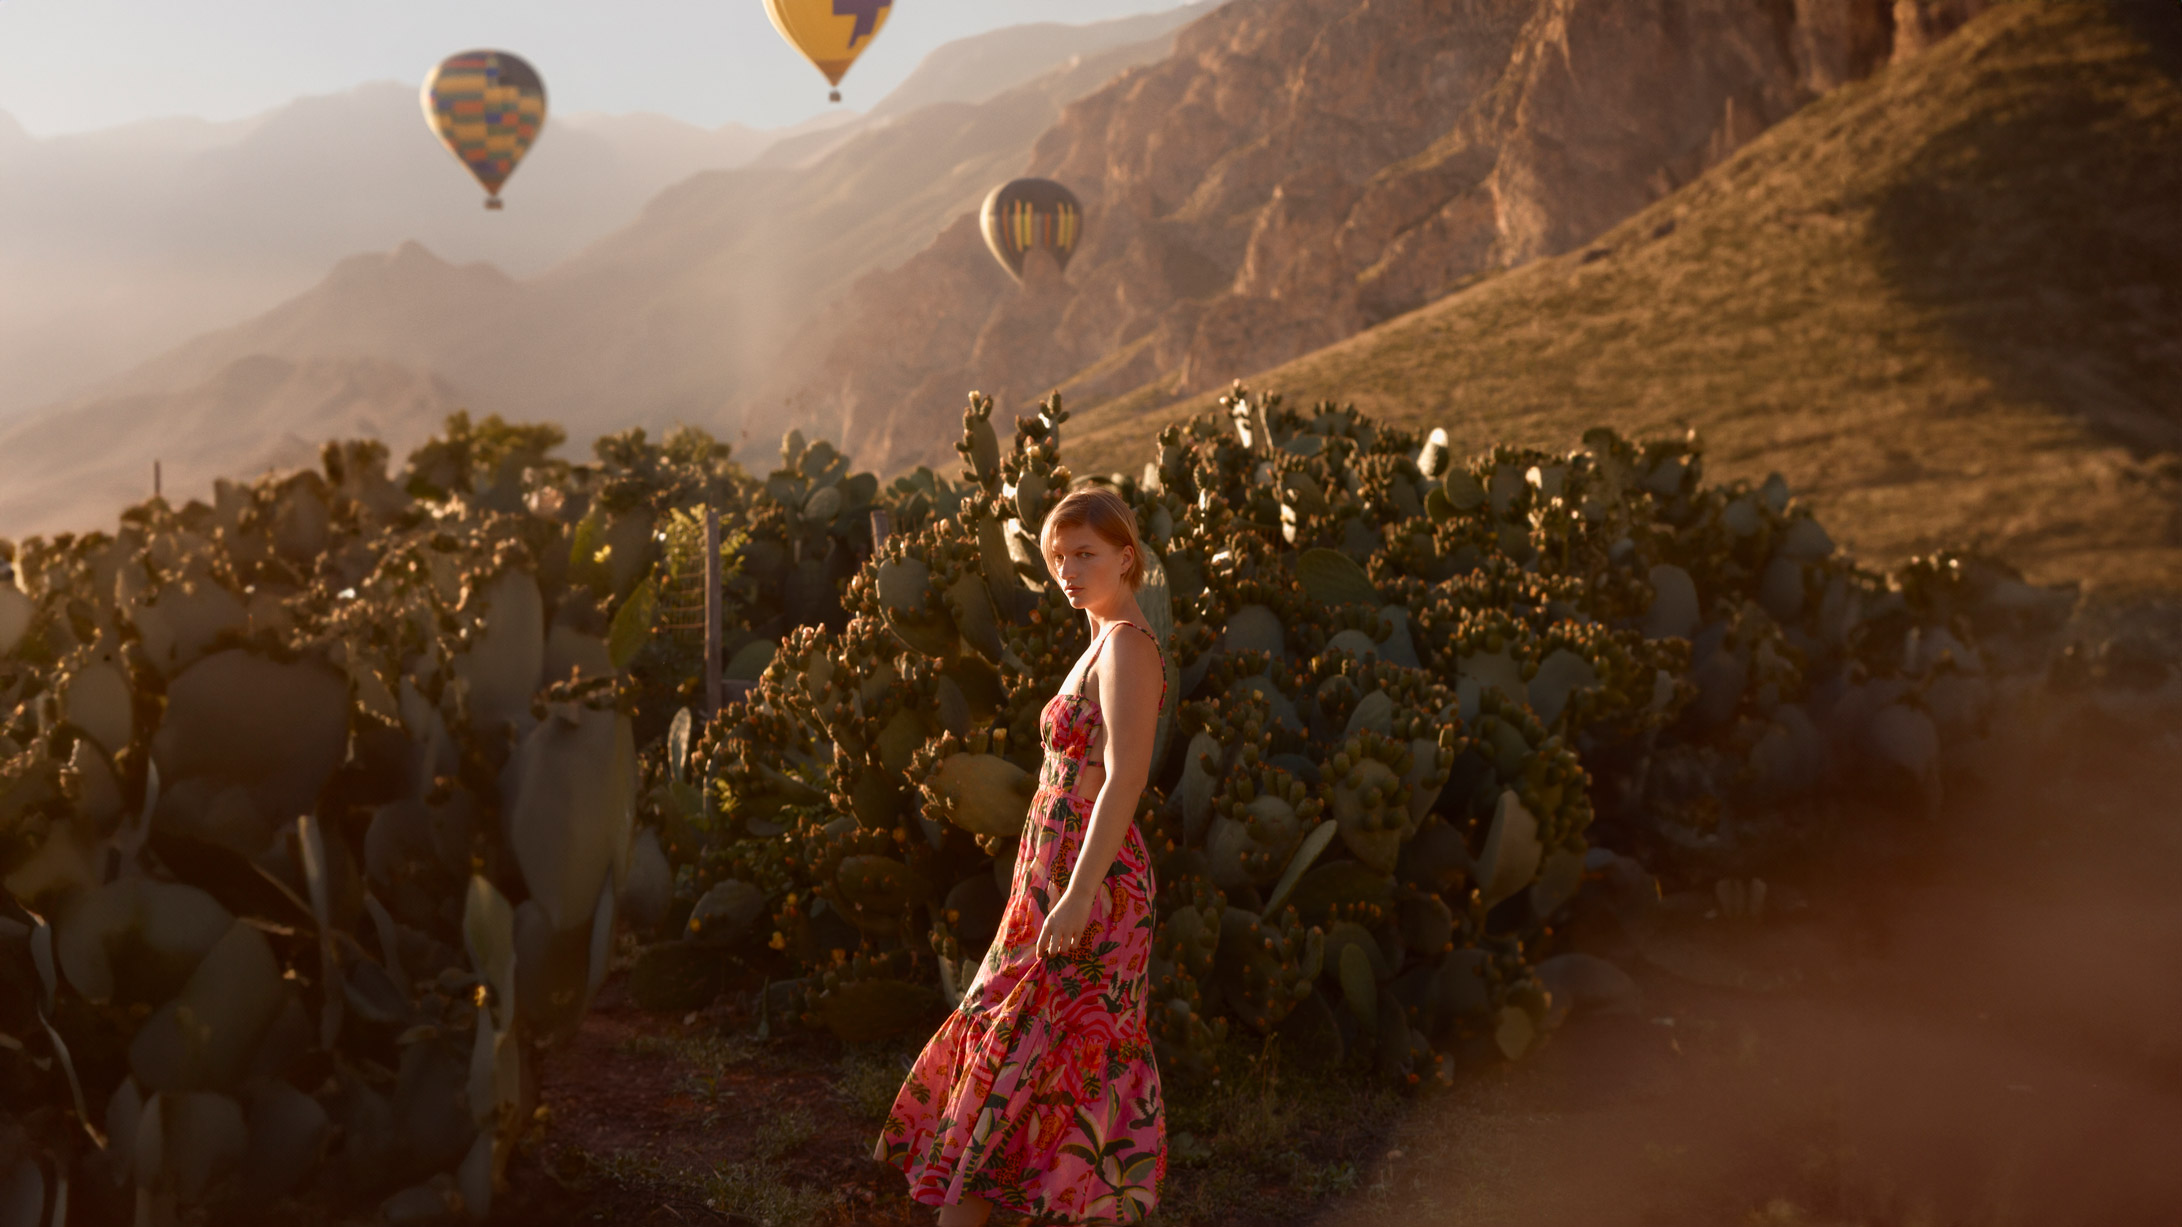 Photographie d'une femme en robe rose devant un paysage de montgolfiere, de montagnes et catcus